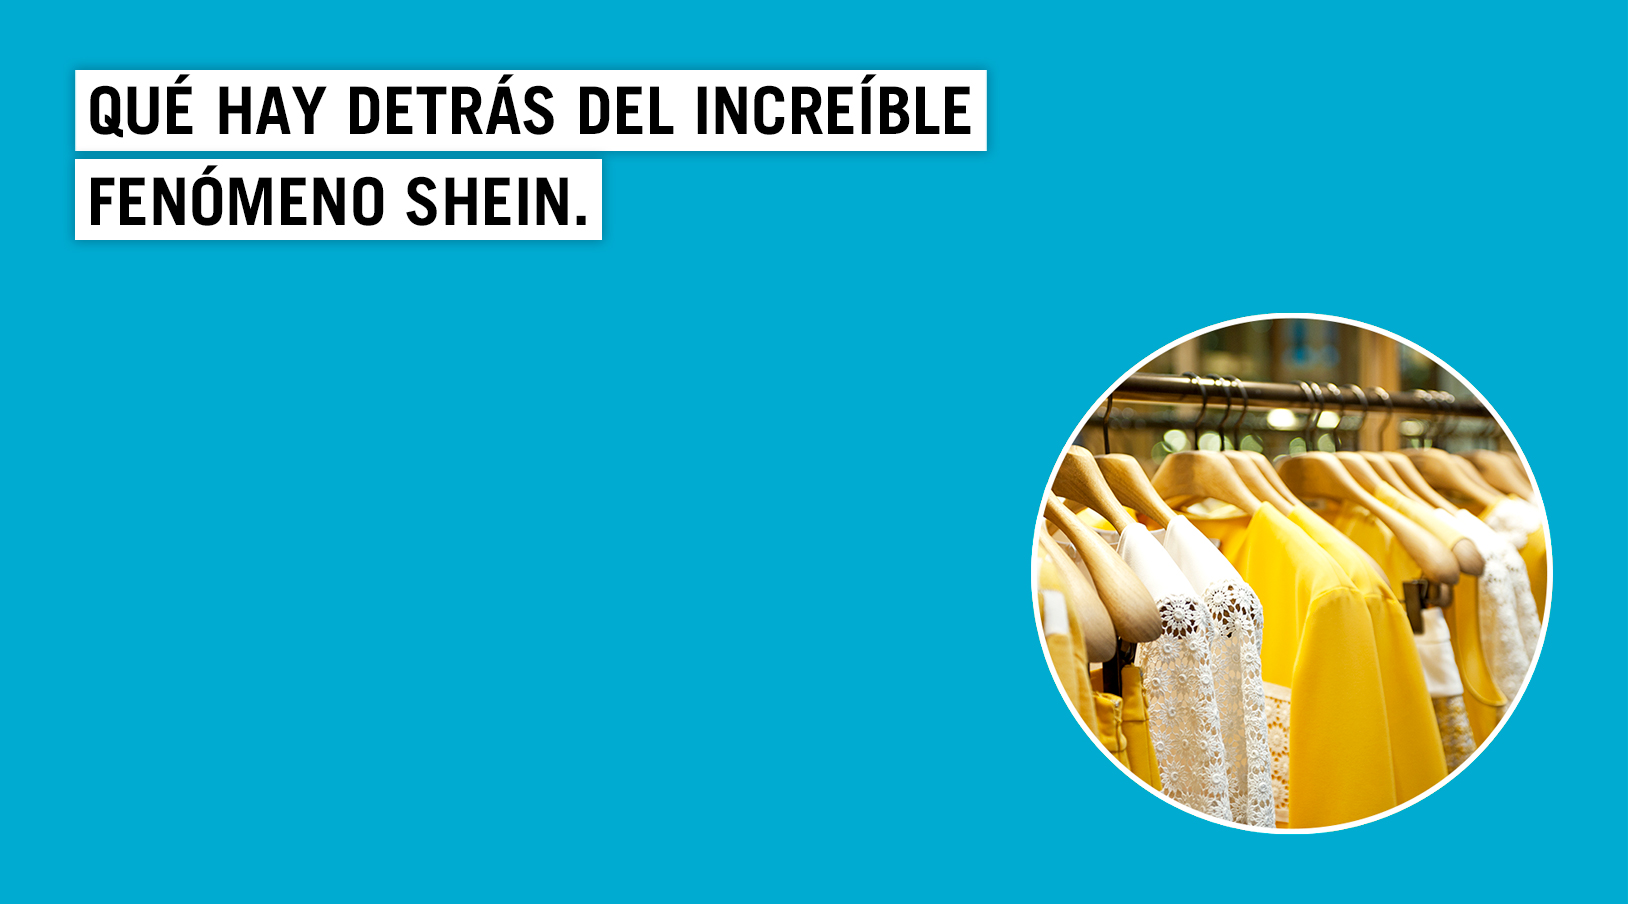 Vender en Shein: conoce cómo es su programa de afiliados